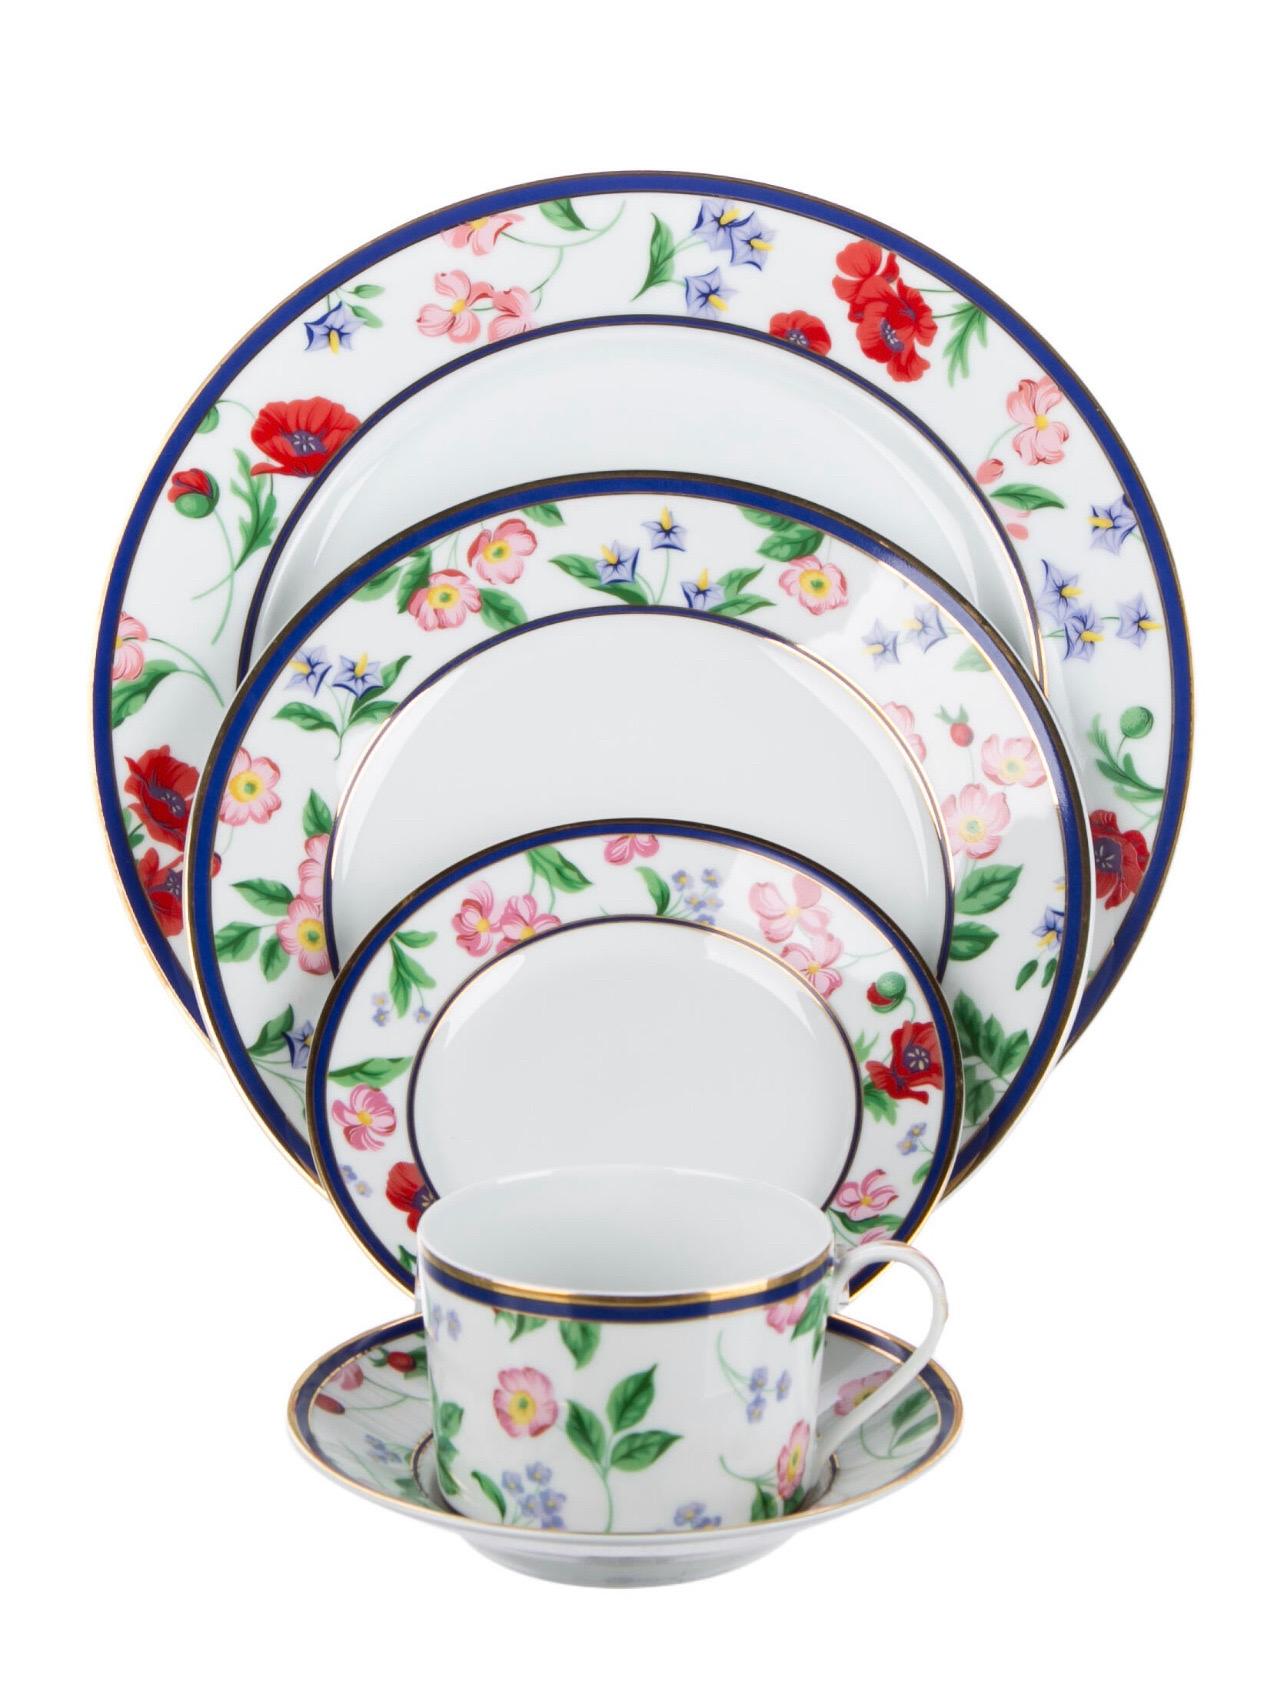 Service de vaisselle de 102 pièces en porcelaine de Limoges pour Tiffany & Co. dans le motif American Garden.

Il est orné d'un motif floral, d'une garniture dorée sur le bord et d'un tampon de la marque sur le dessous. 

Fabriqué en